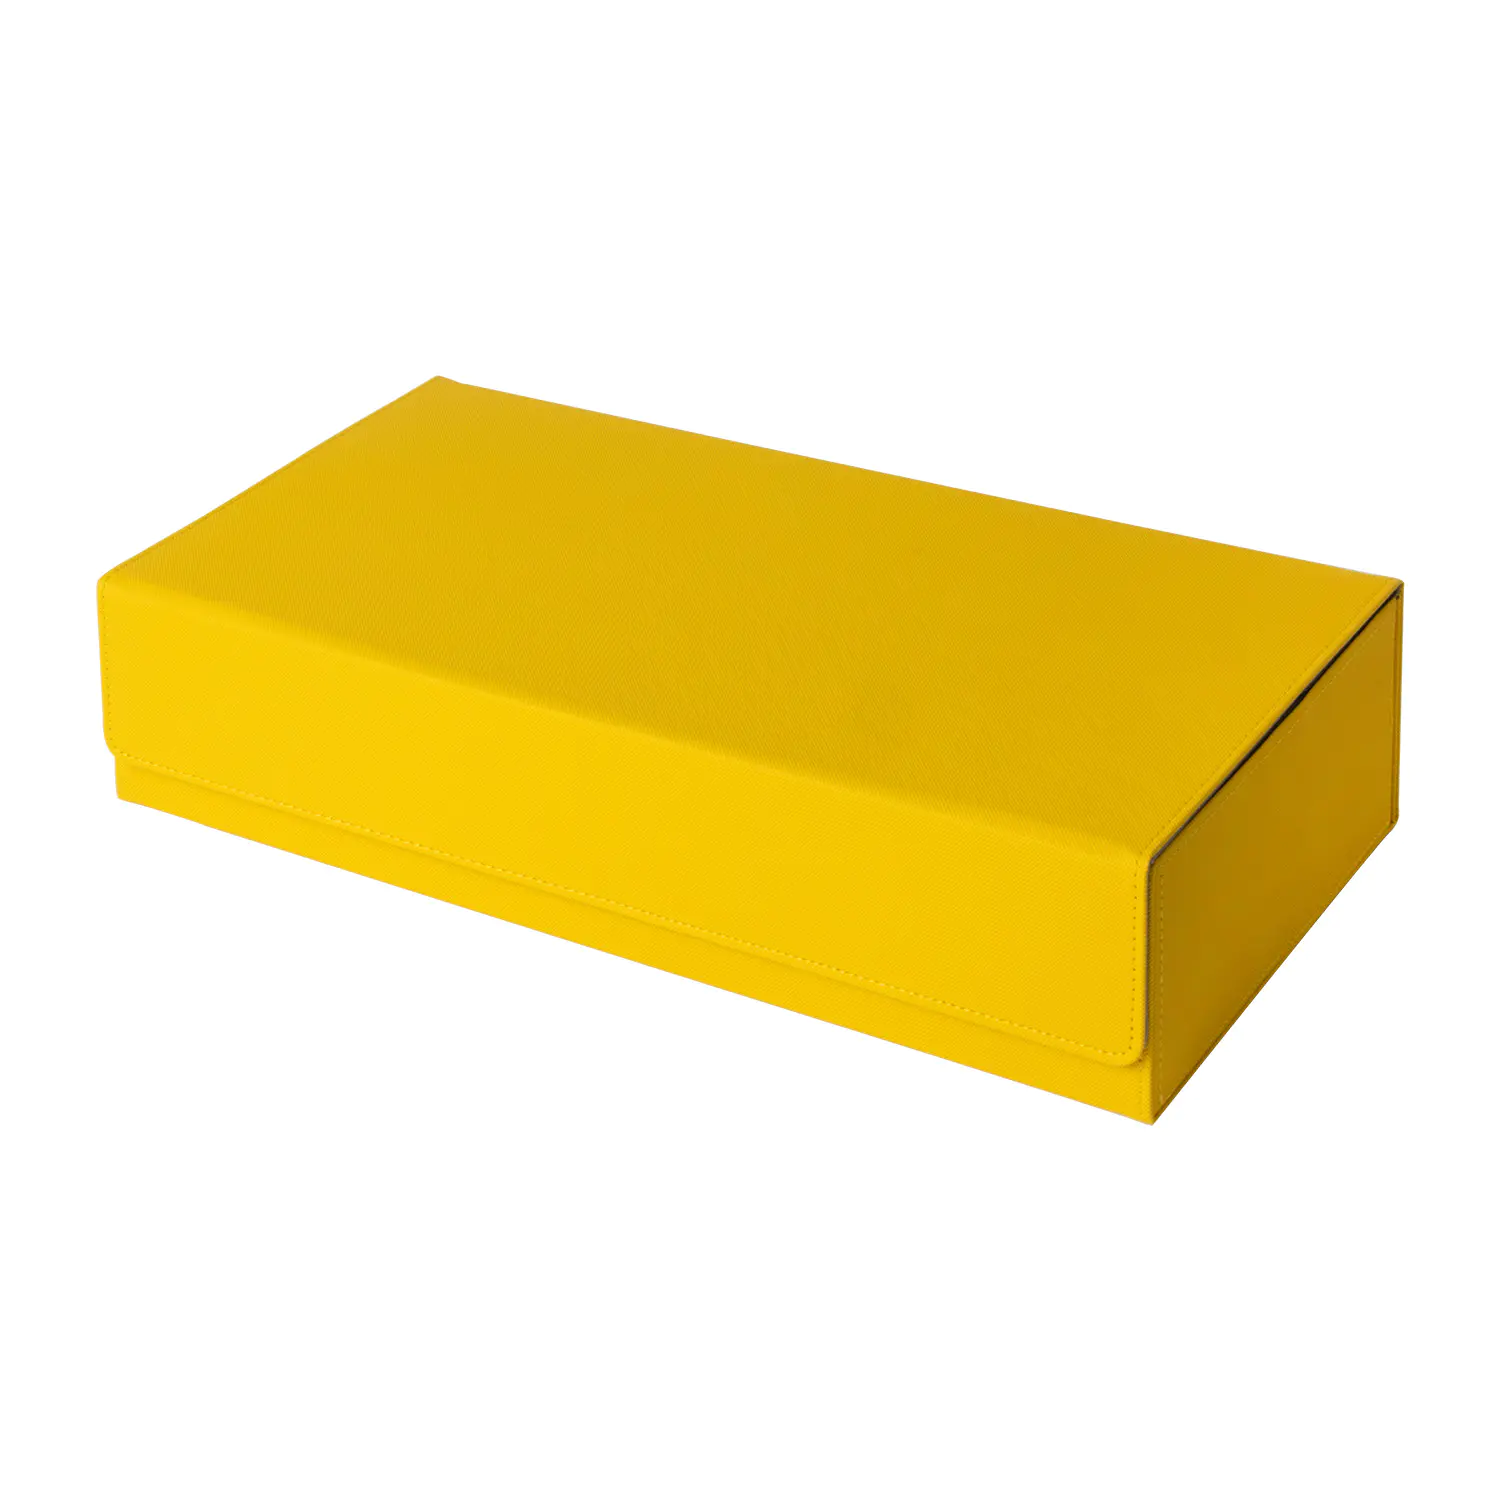 550 프리미엄 PU 가죽 데크 케이스 카드 프로텍터 카드 데크 보관함 - 노란색